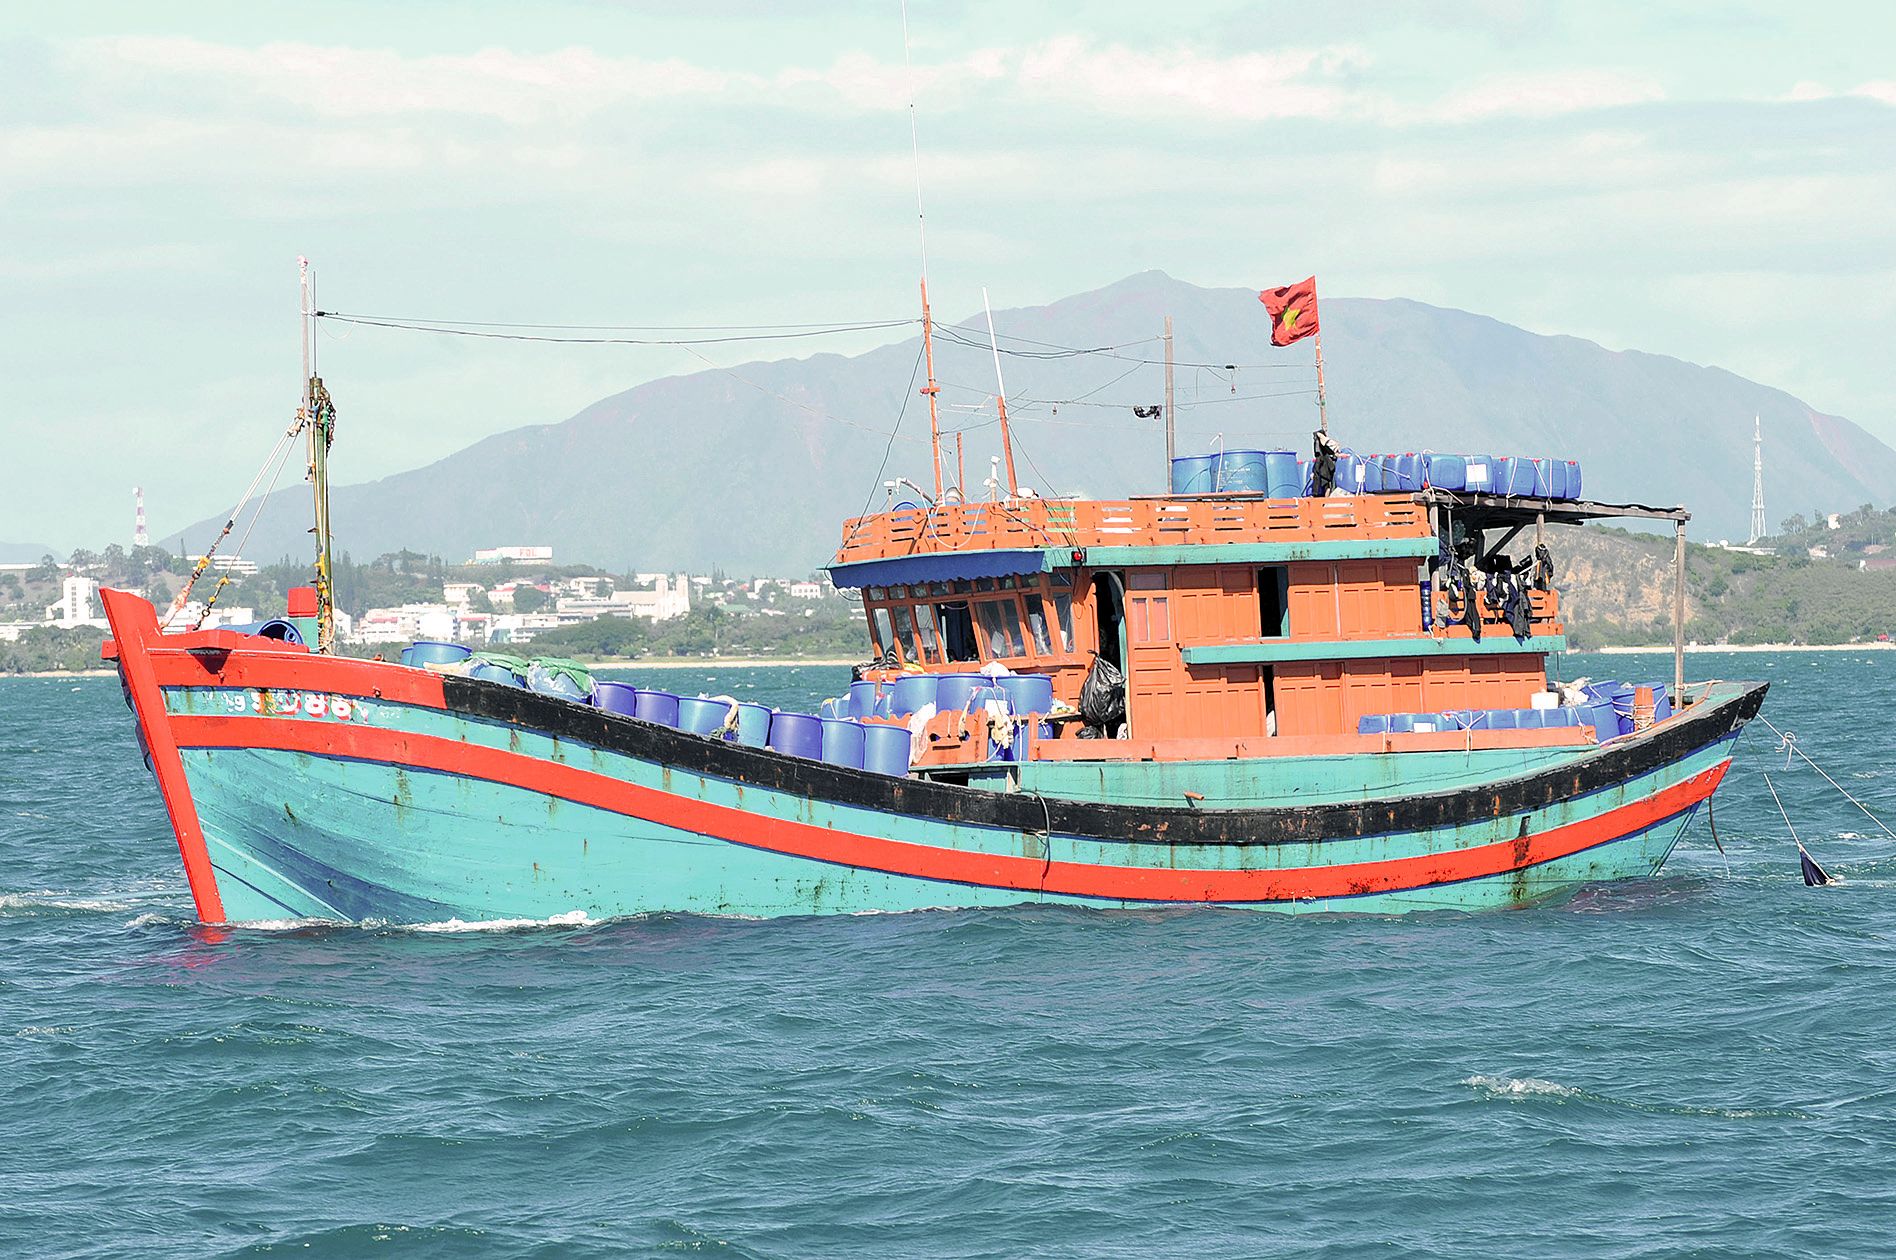 L’équipage, composé de seize pêcheurs clandestins vietnamiens, a été pris en charge par la police aux frontières ce week-end lors de son arrivée à Nouméa.